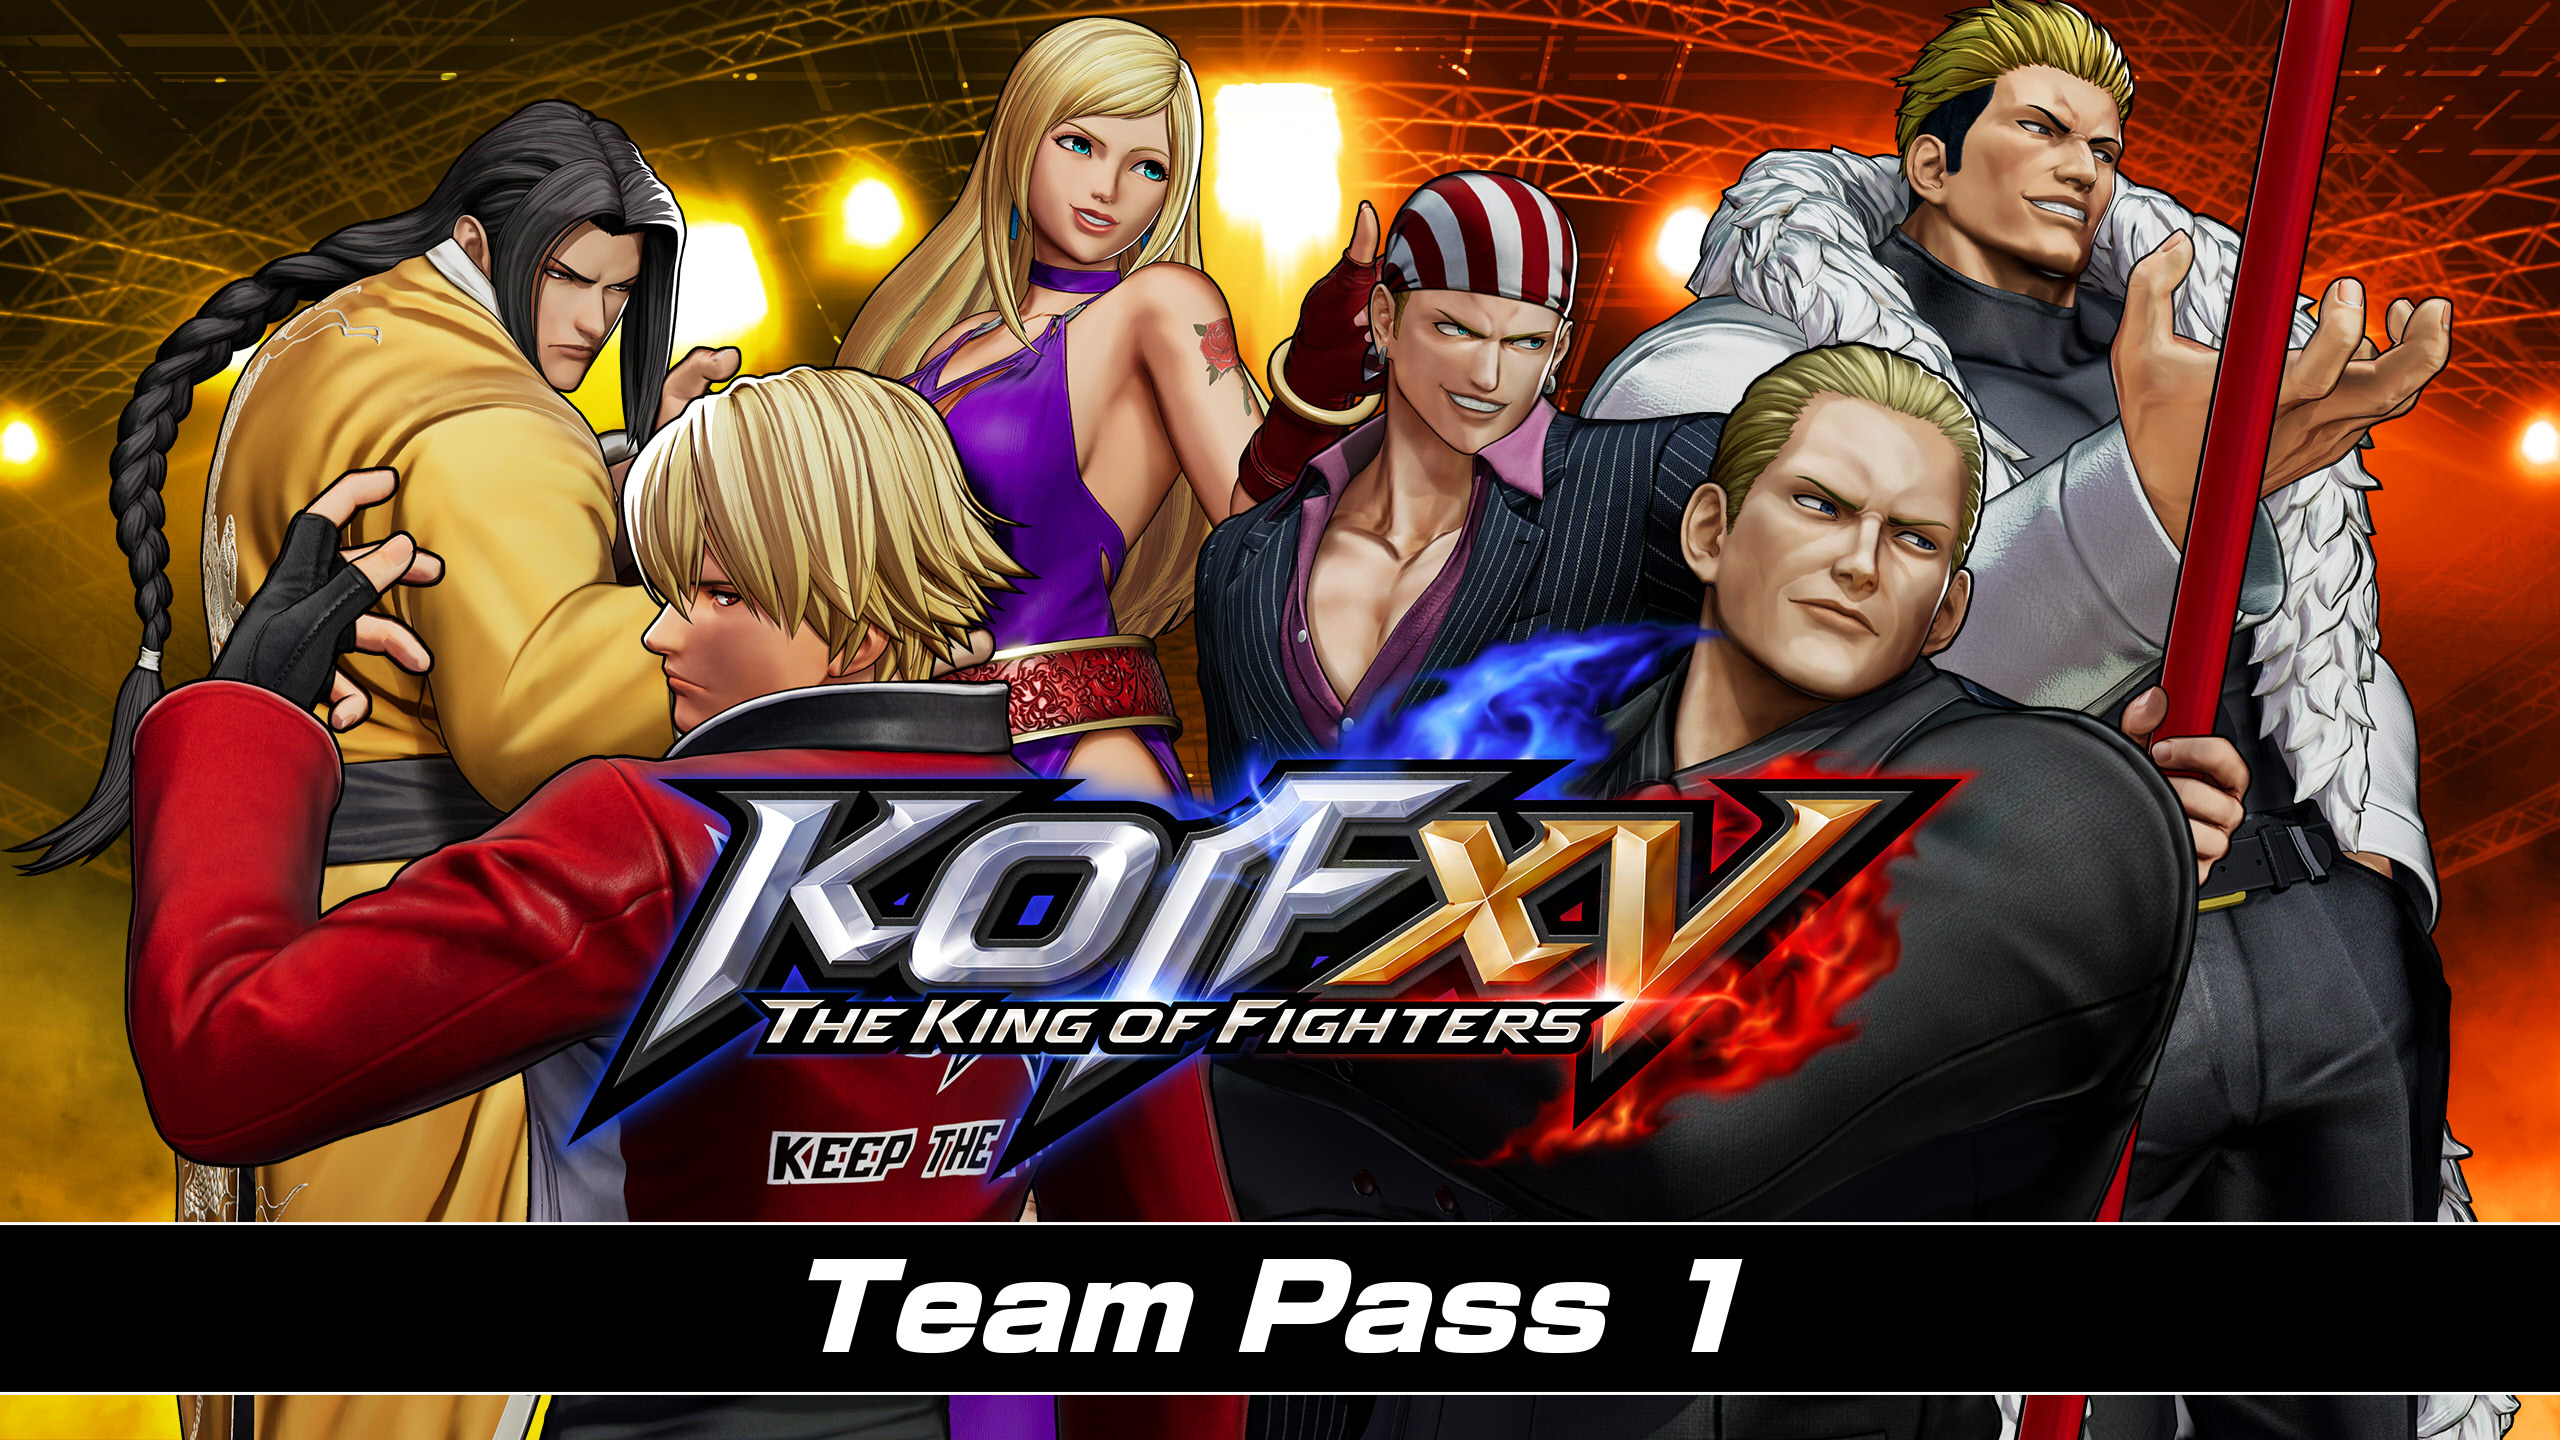 THE KING OF FIGHTERS XV - Team Pass 1 DLC EU PS4 CD Key, 25.98$